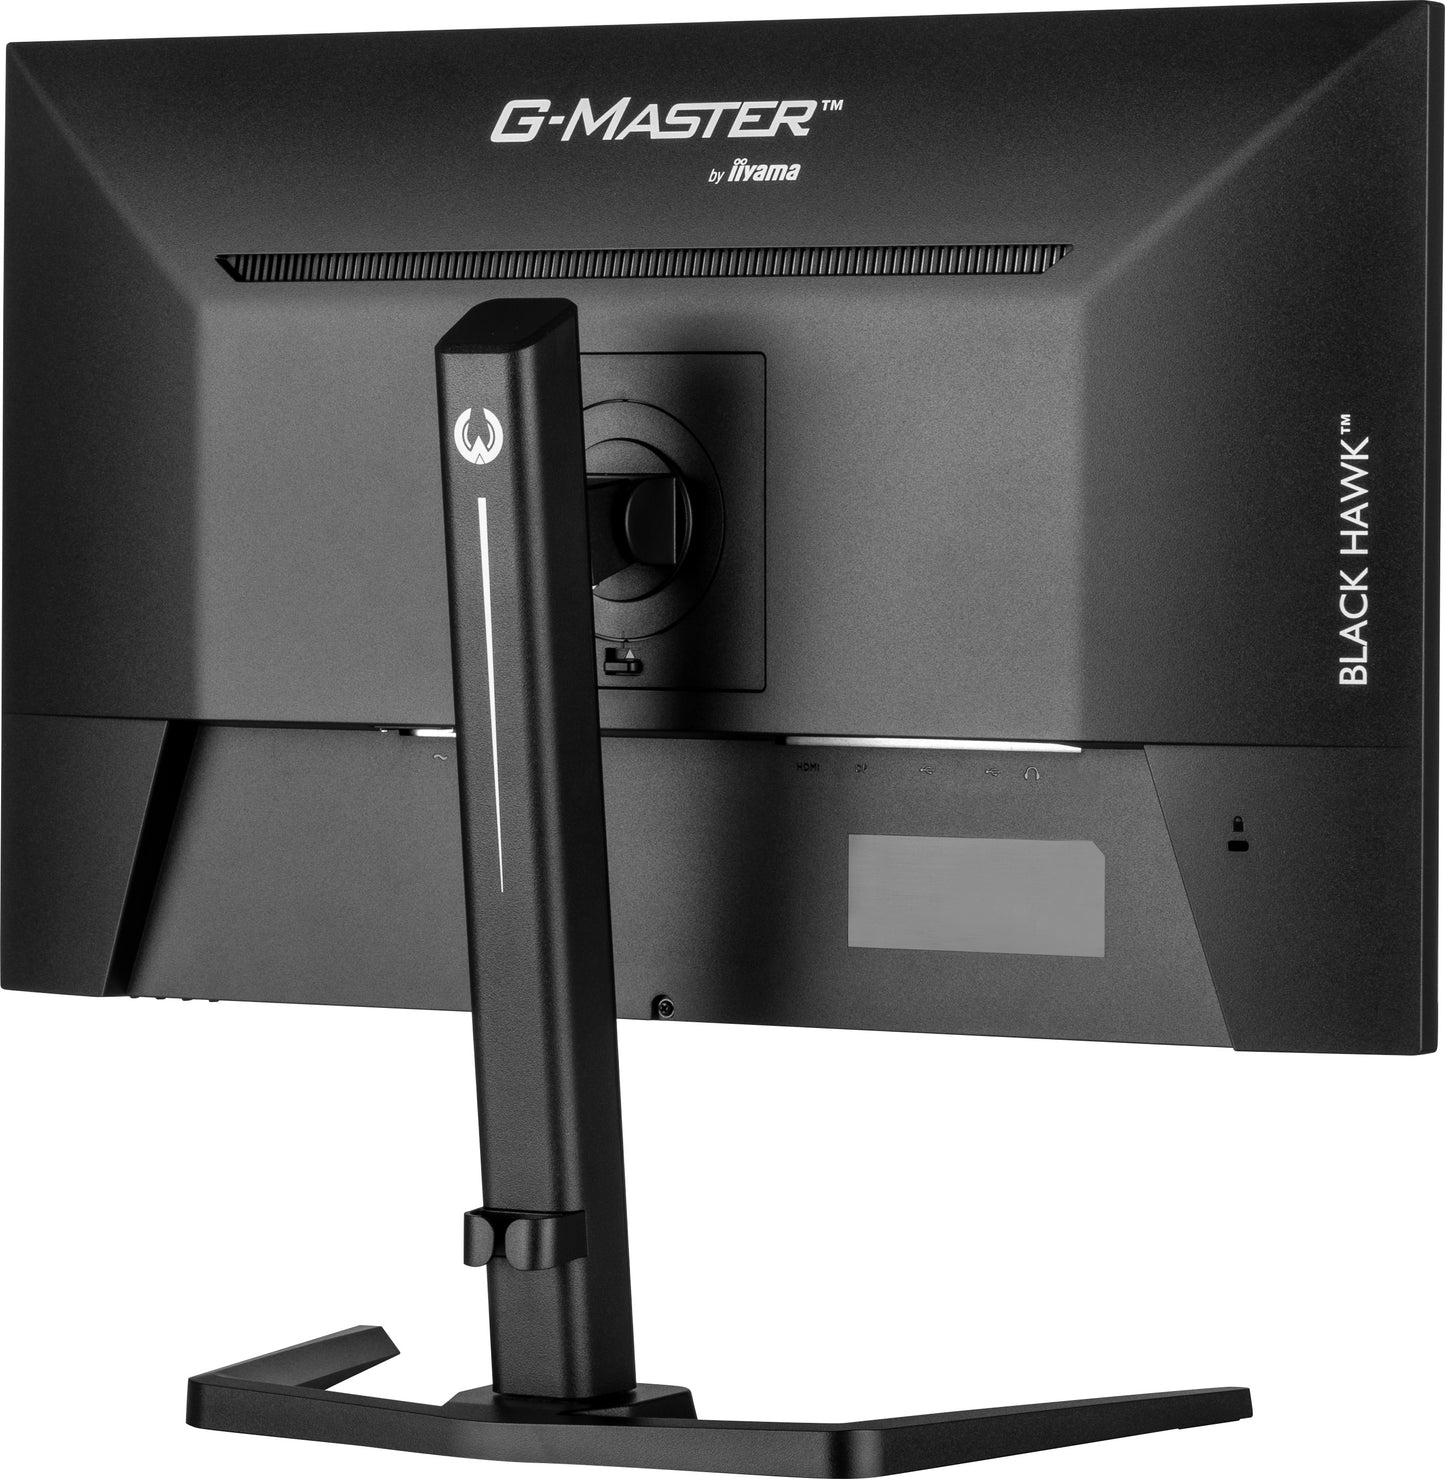 iiyama G-Master GB2745QSU-B1 Black Hawk 27" IPS 1ms Gaming Monitor